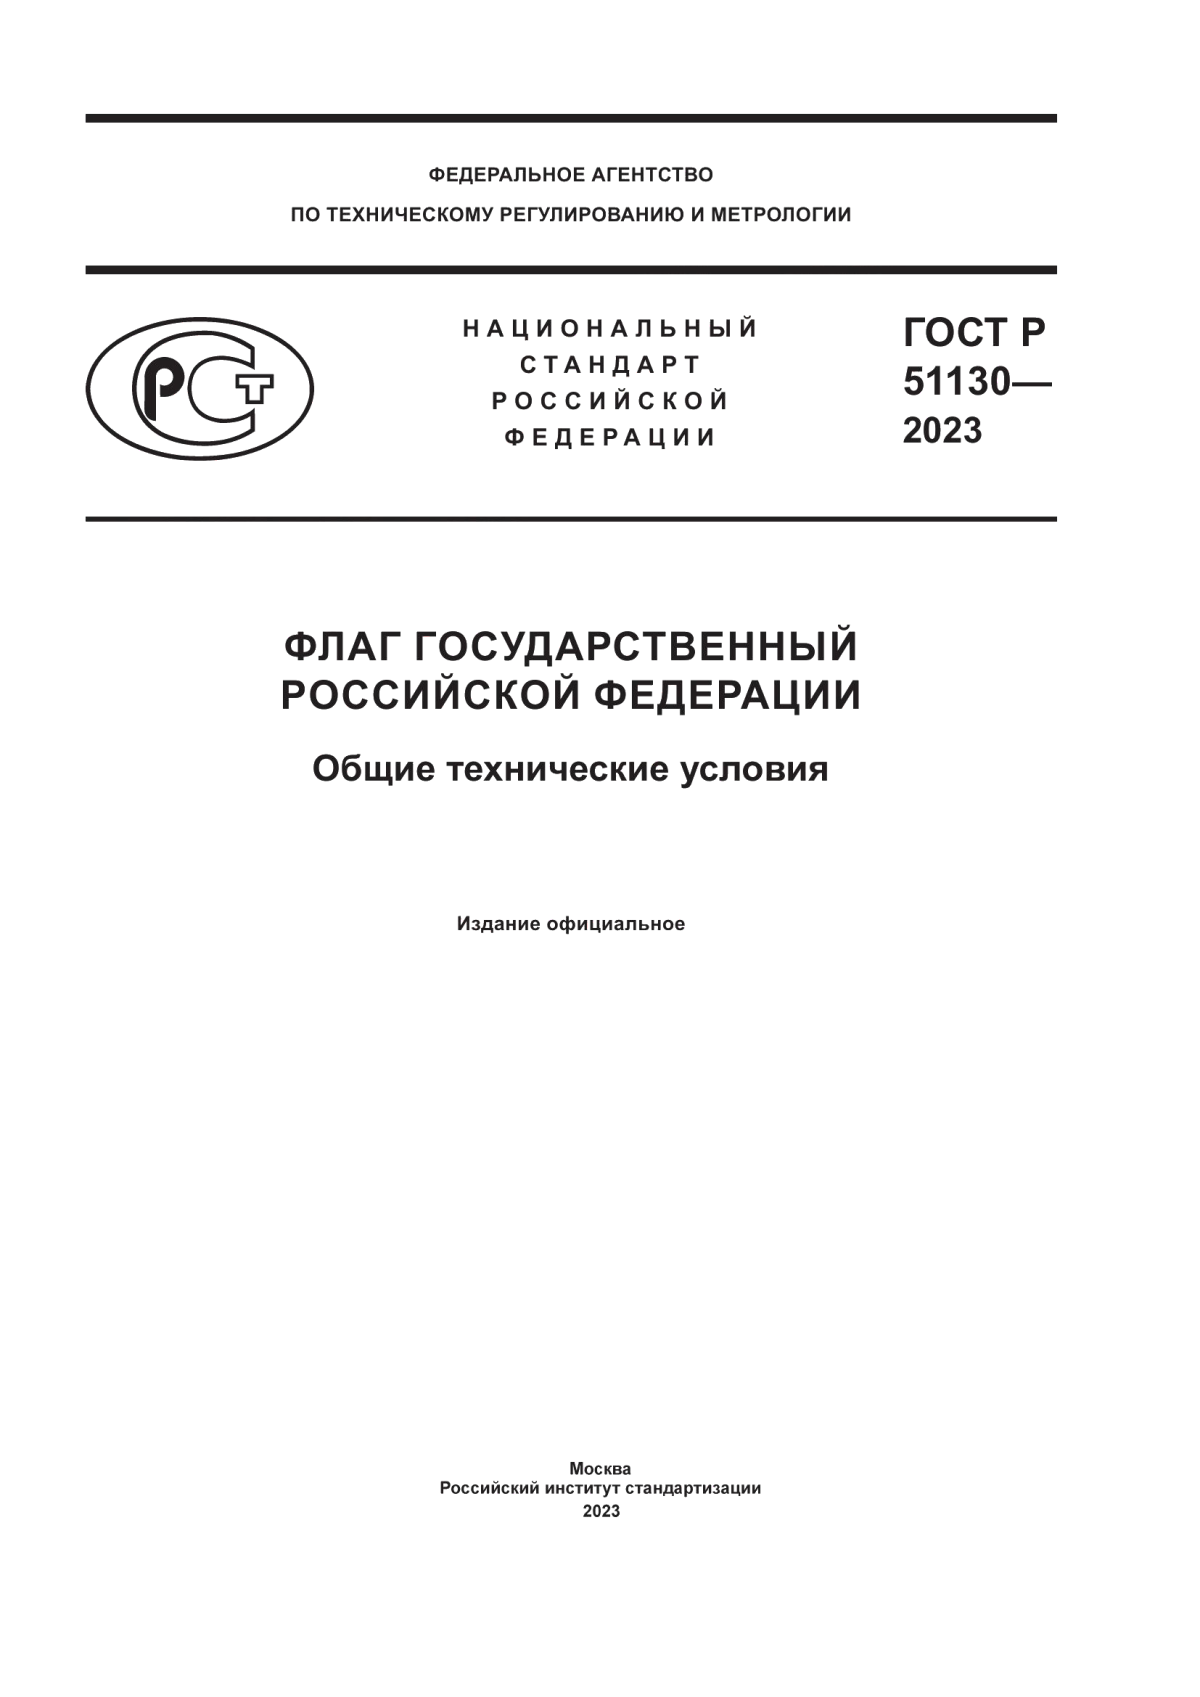 ГОСТ Р 51130-2023 Флаг Государственный Российской Федерации. Общие технические условия